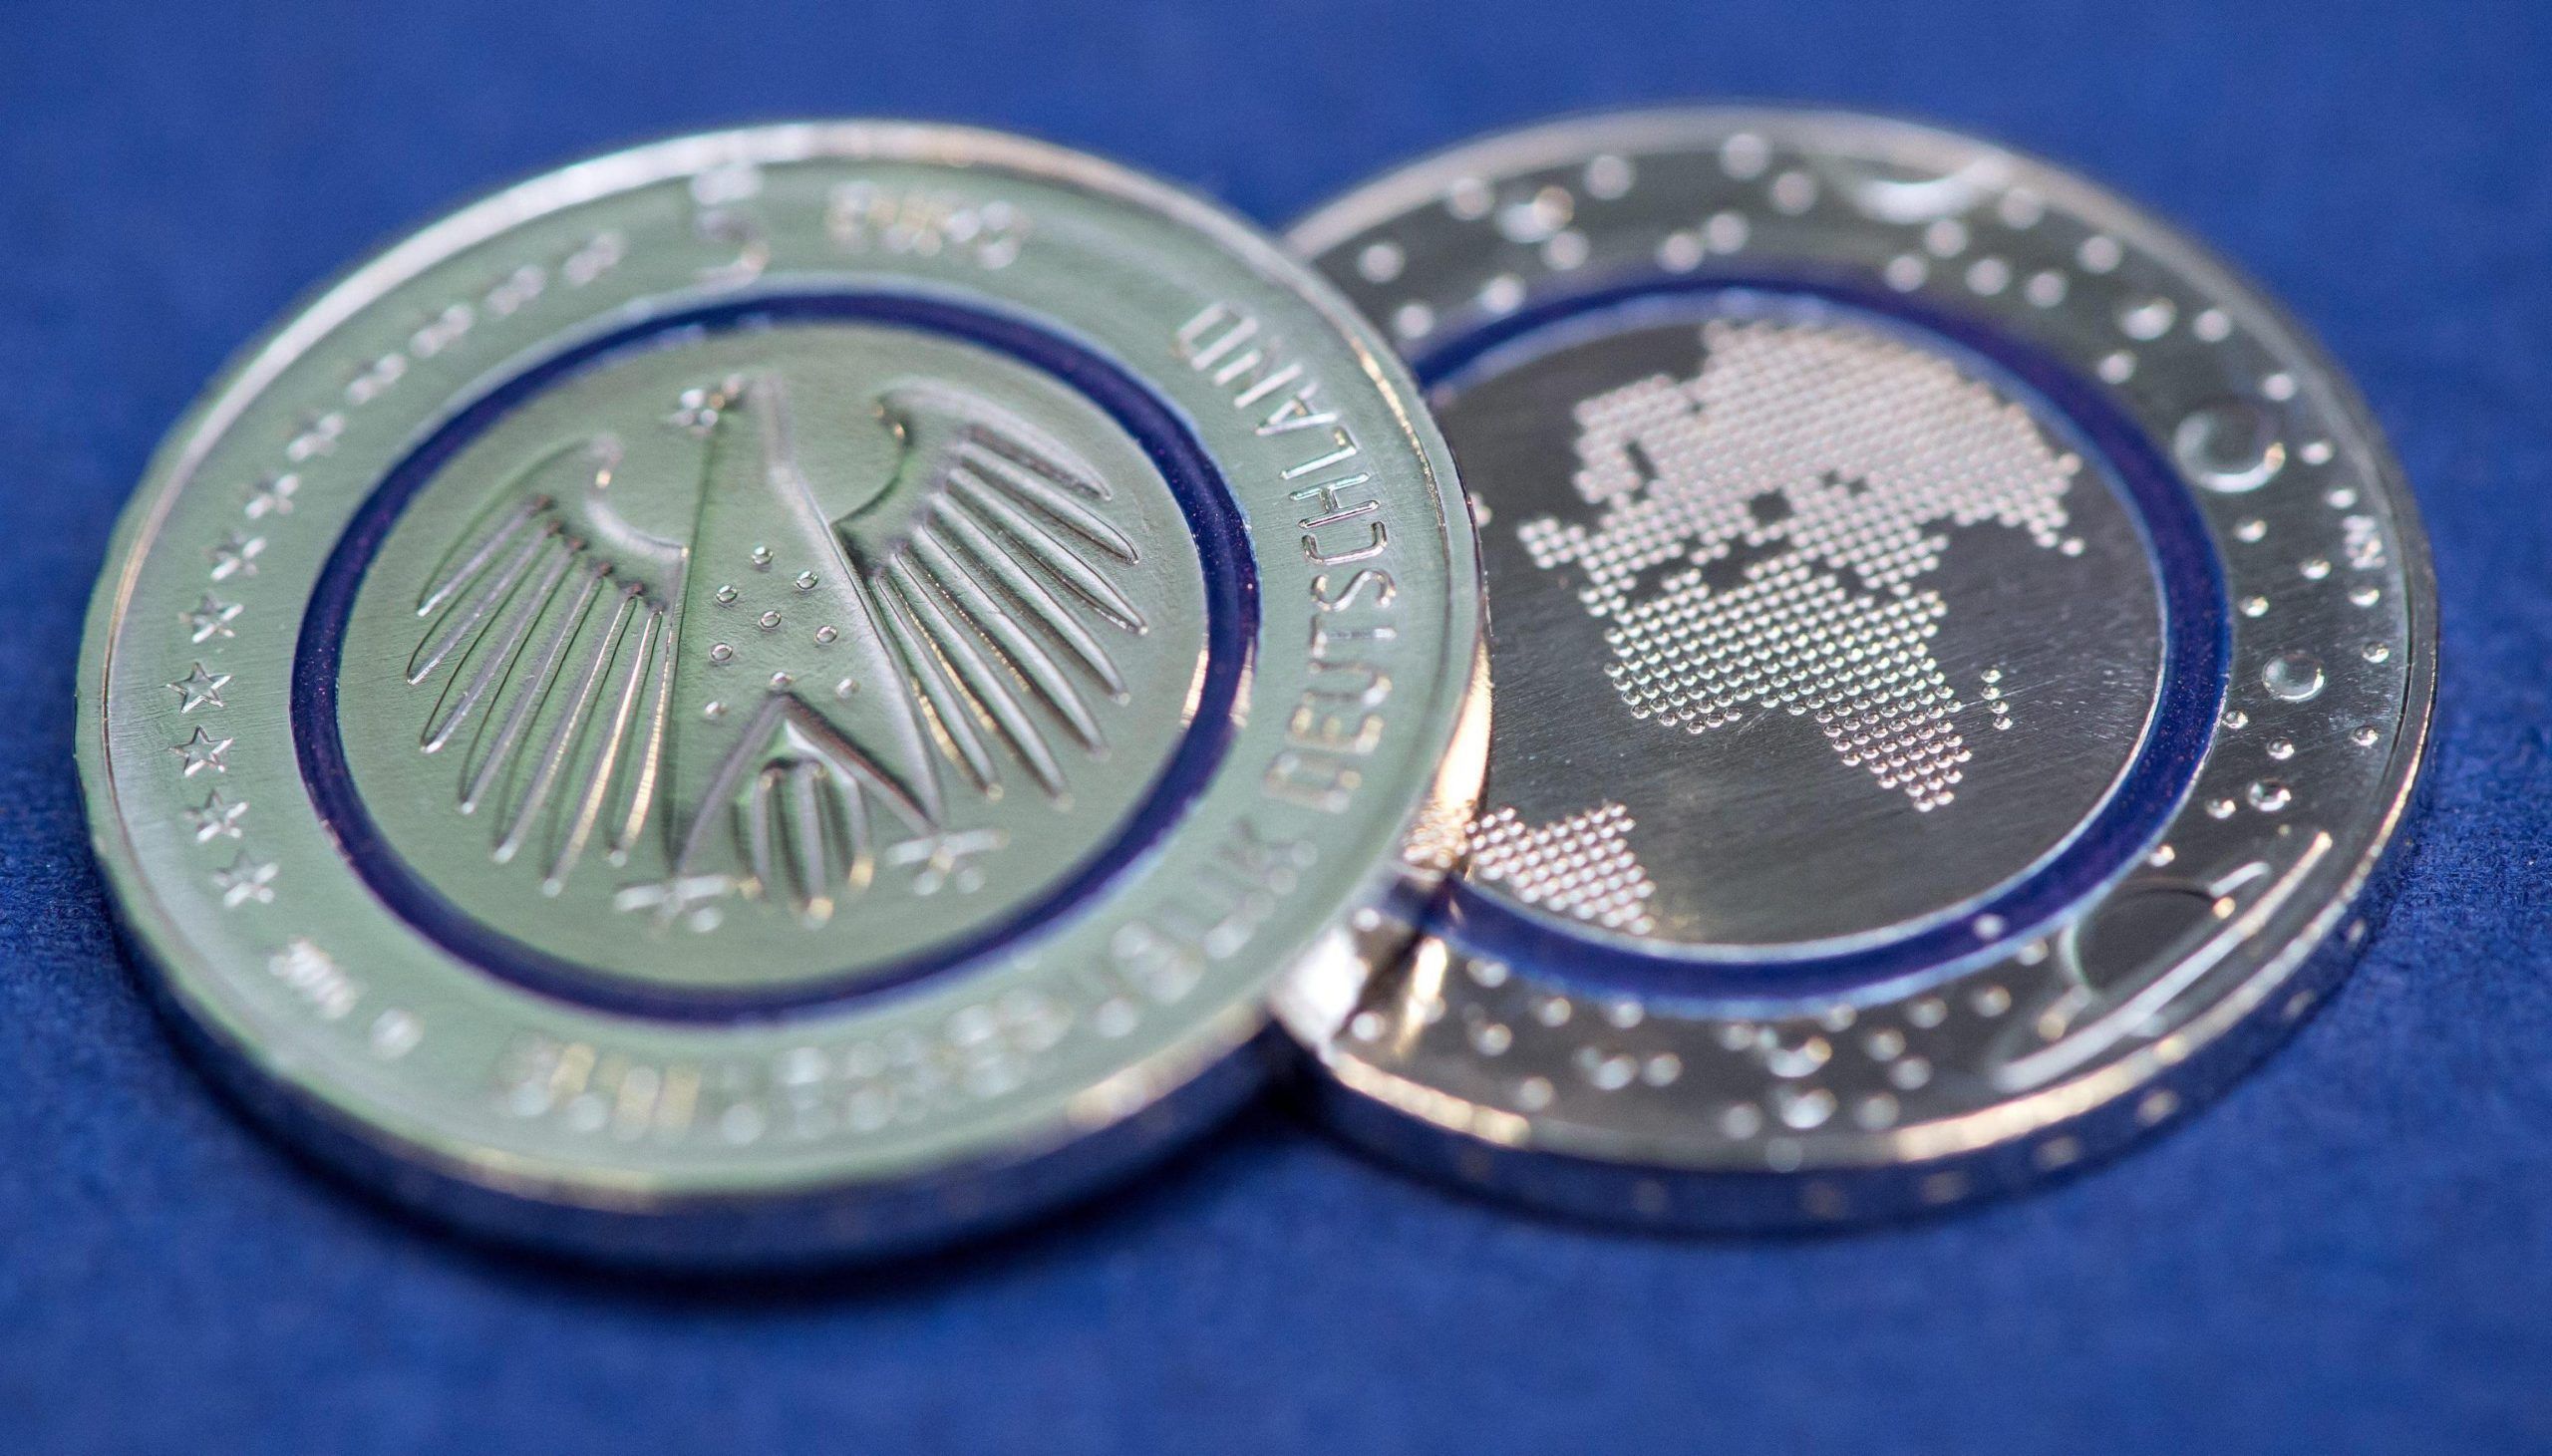 La Germania conia una moneta da 5 euro: vale solo entro i confini del Paese